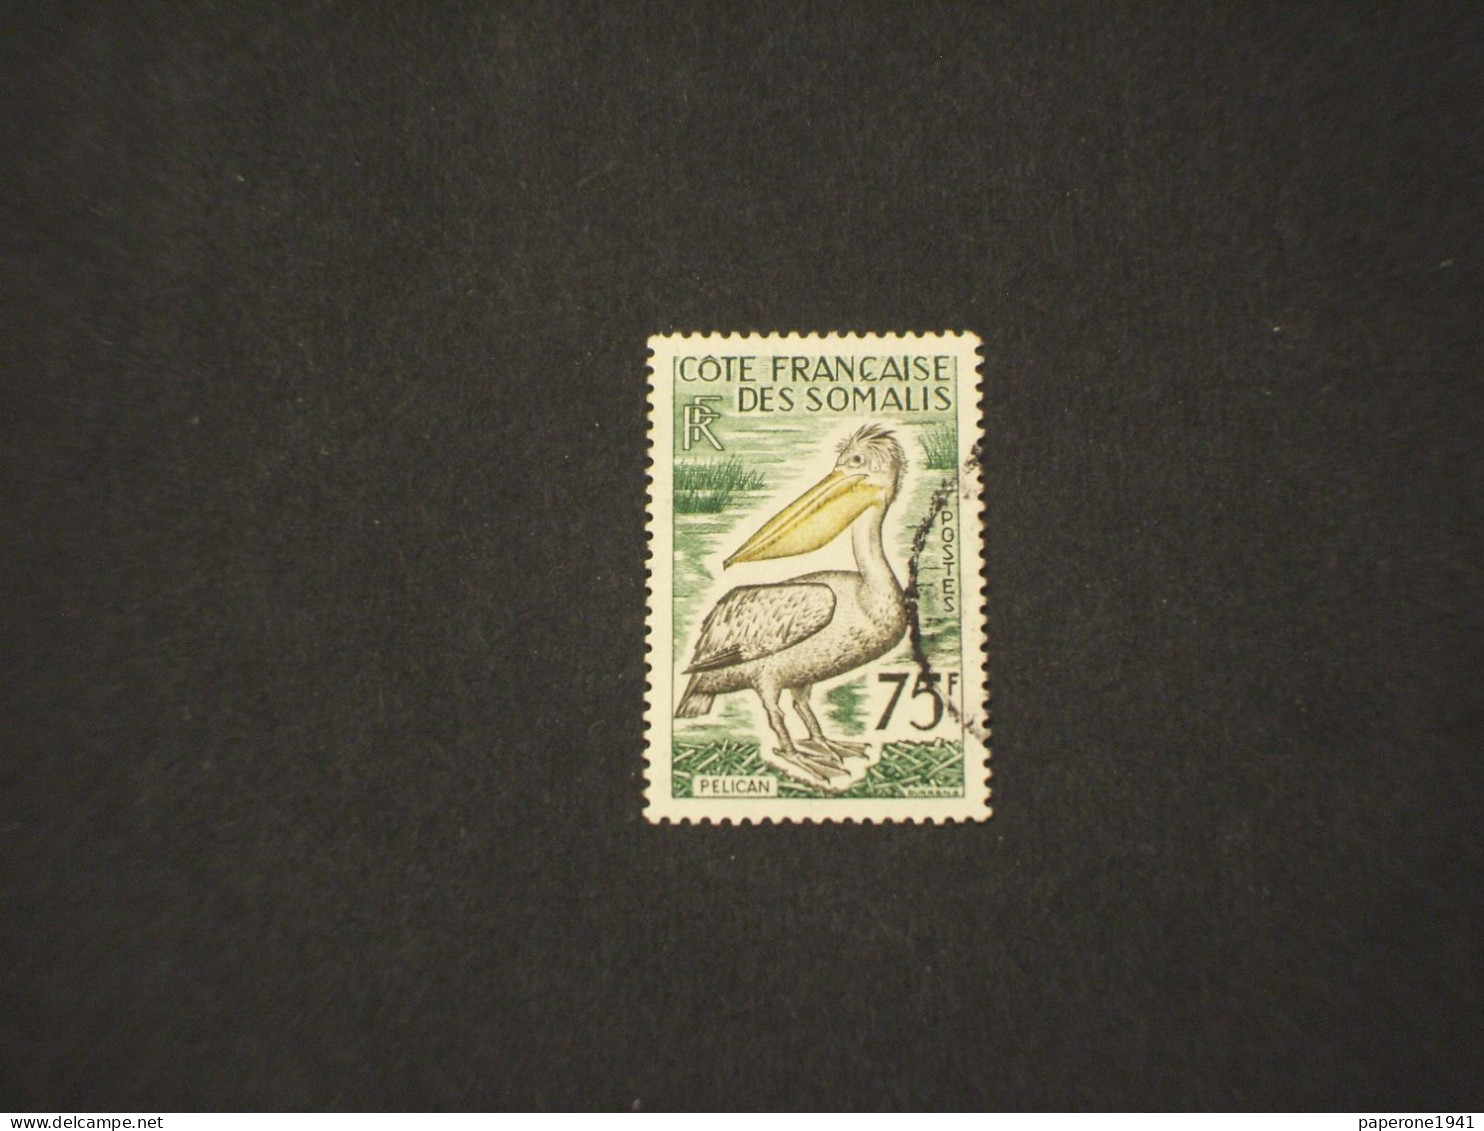 COSTA FRANCESE DEI SOMALI-COTE FRANCAISE DES SOMALIS - 1959/60 UCCELLO/PELLICANO 75 F. - TIMBRATO/USED - Oblitérés